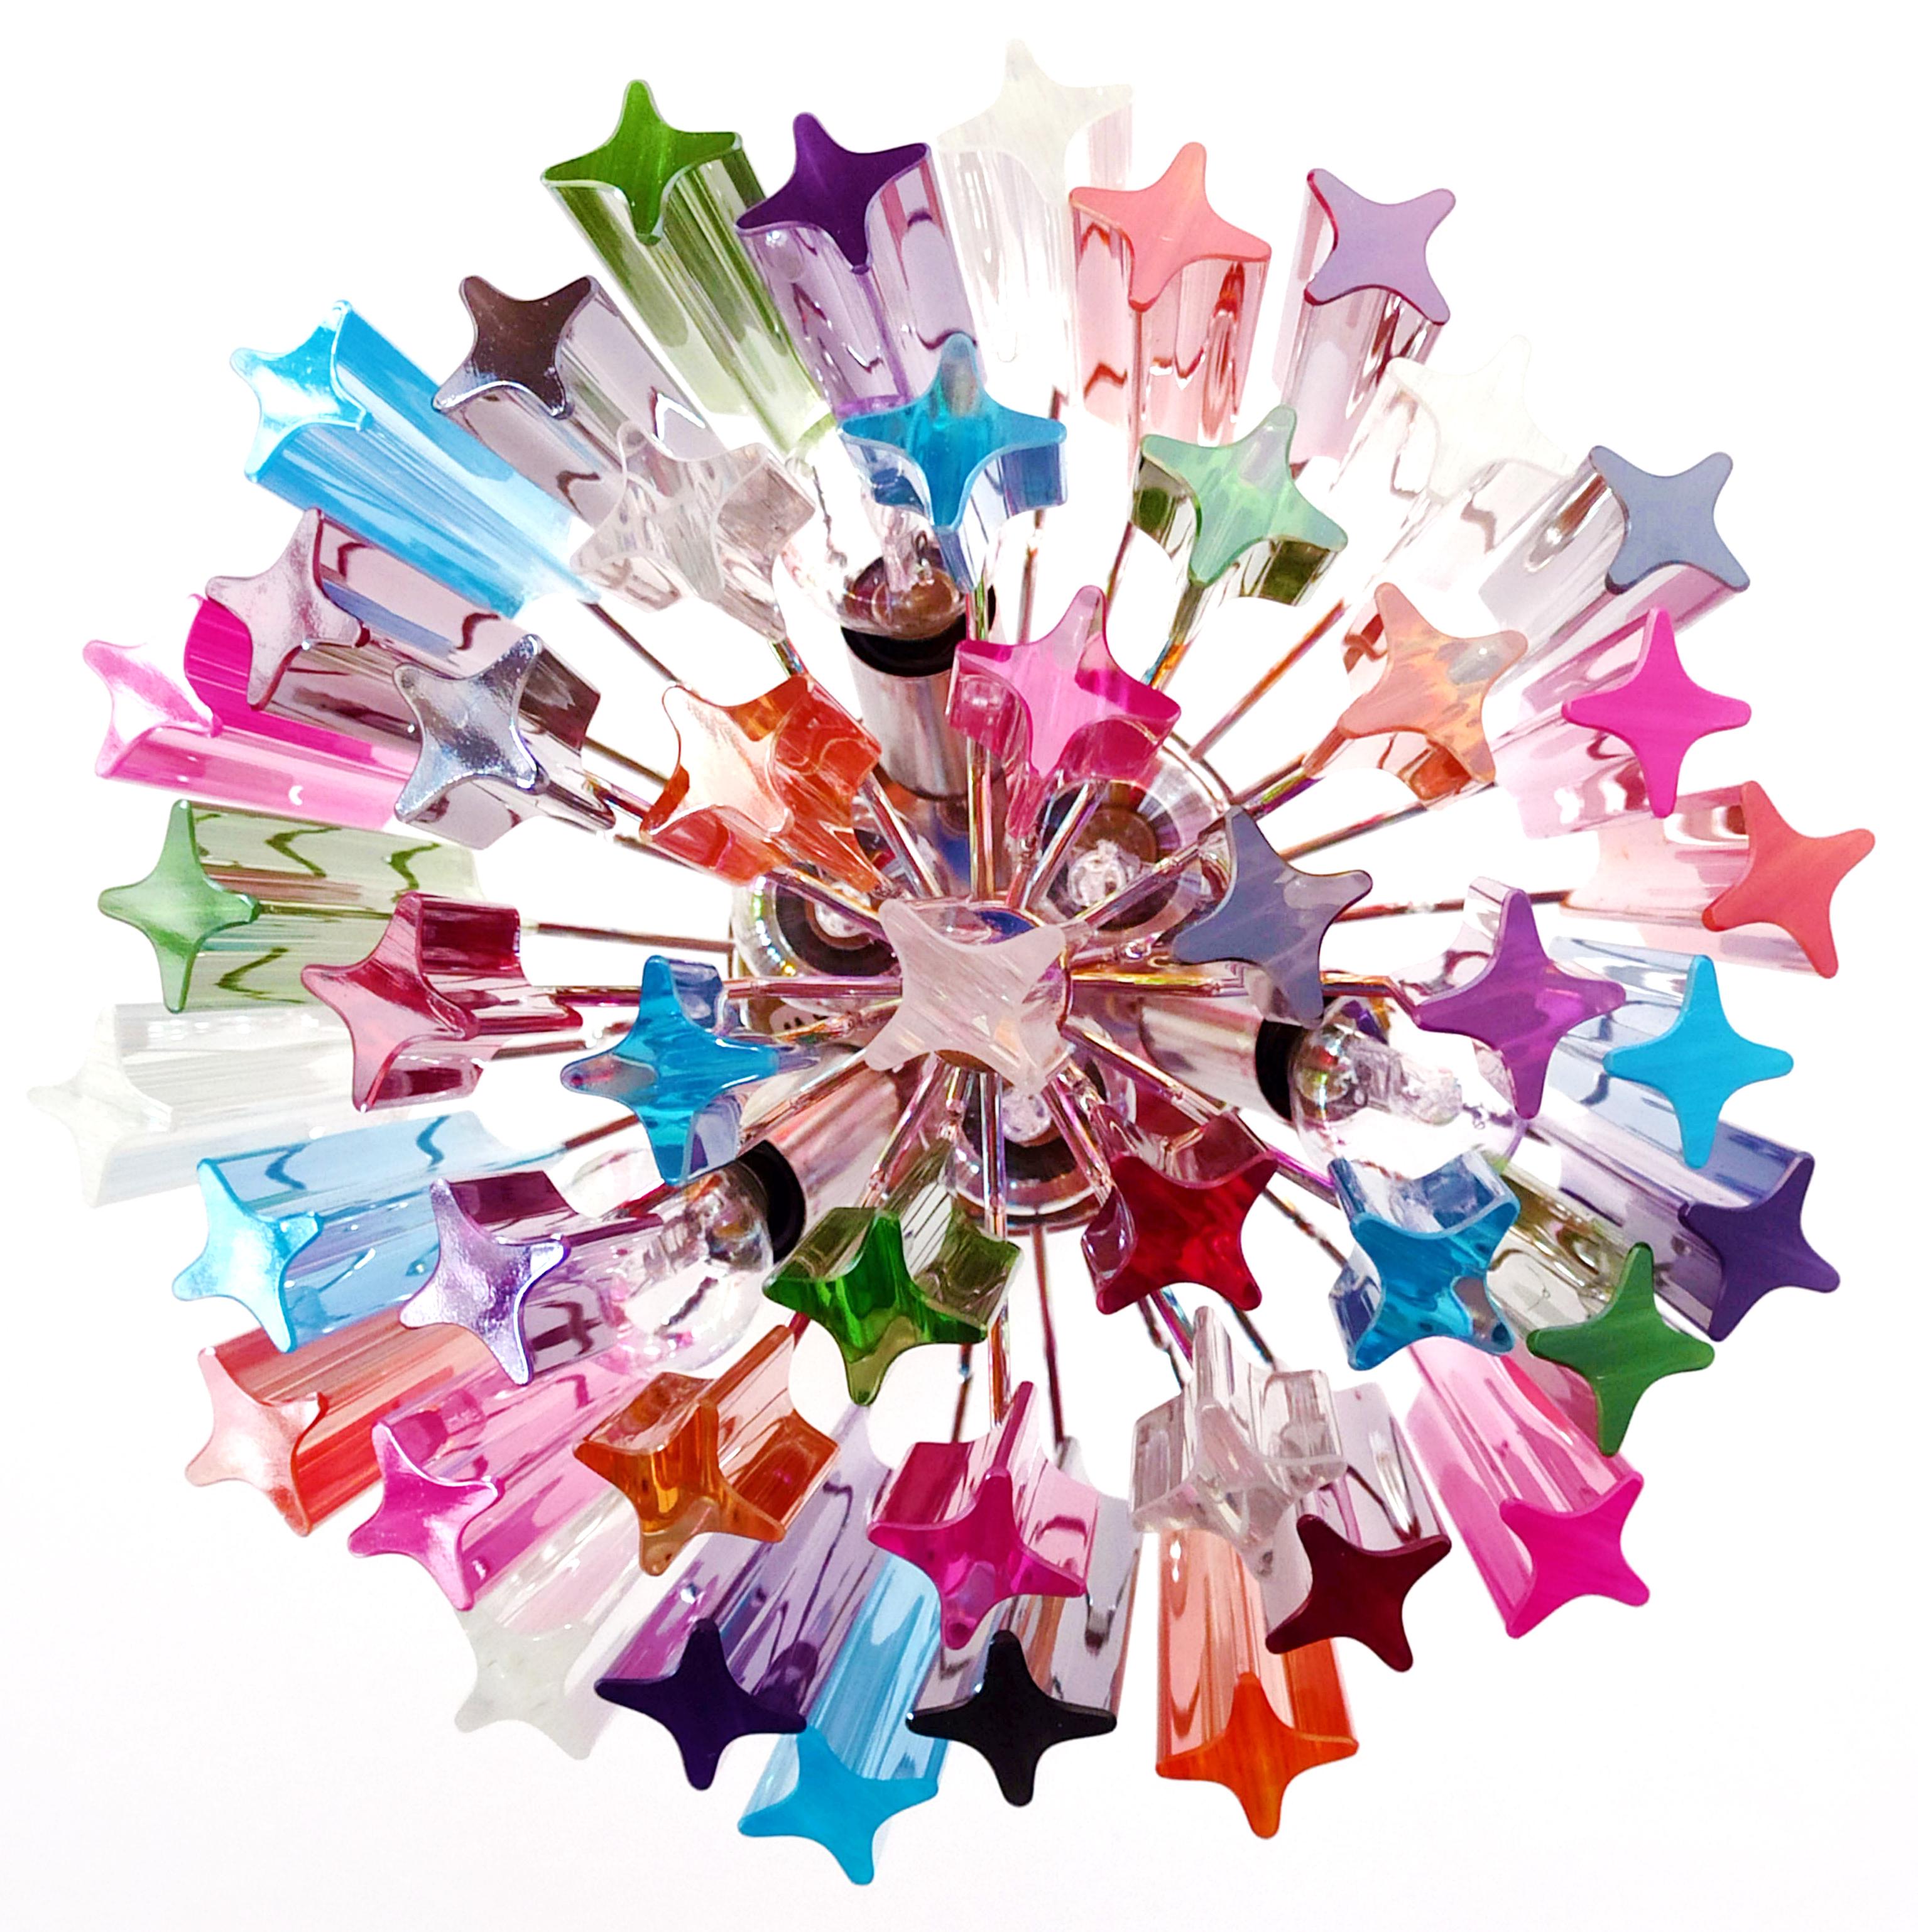 Original Quadriedri Murano chandeliers - 47 multicolored prisms For Sale 6